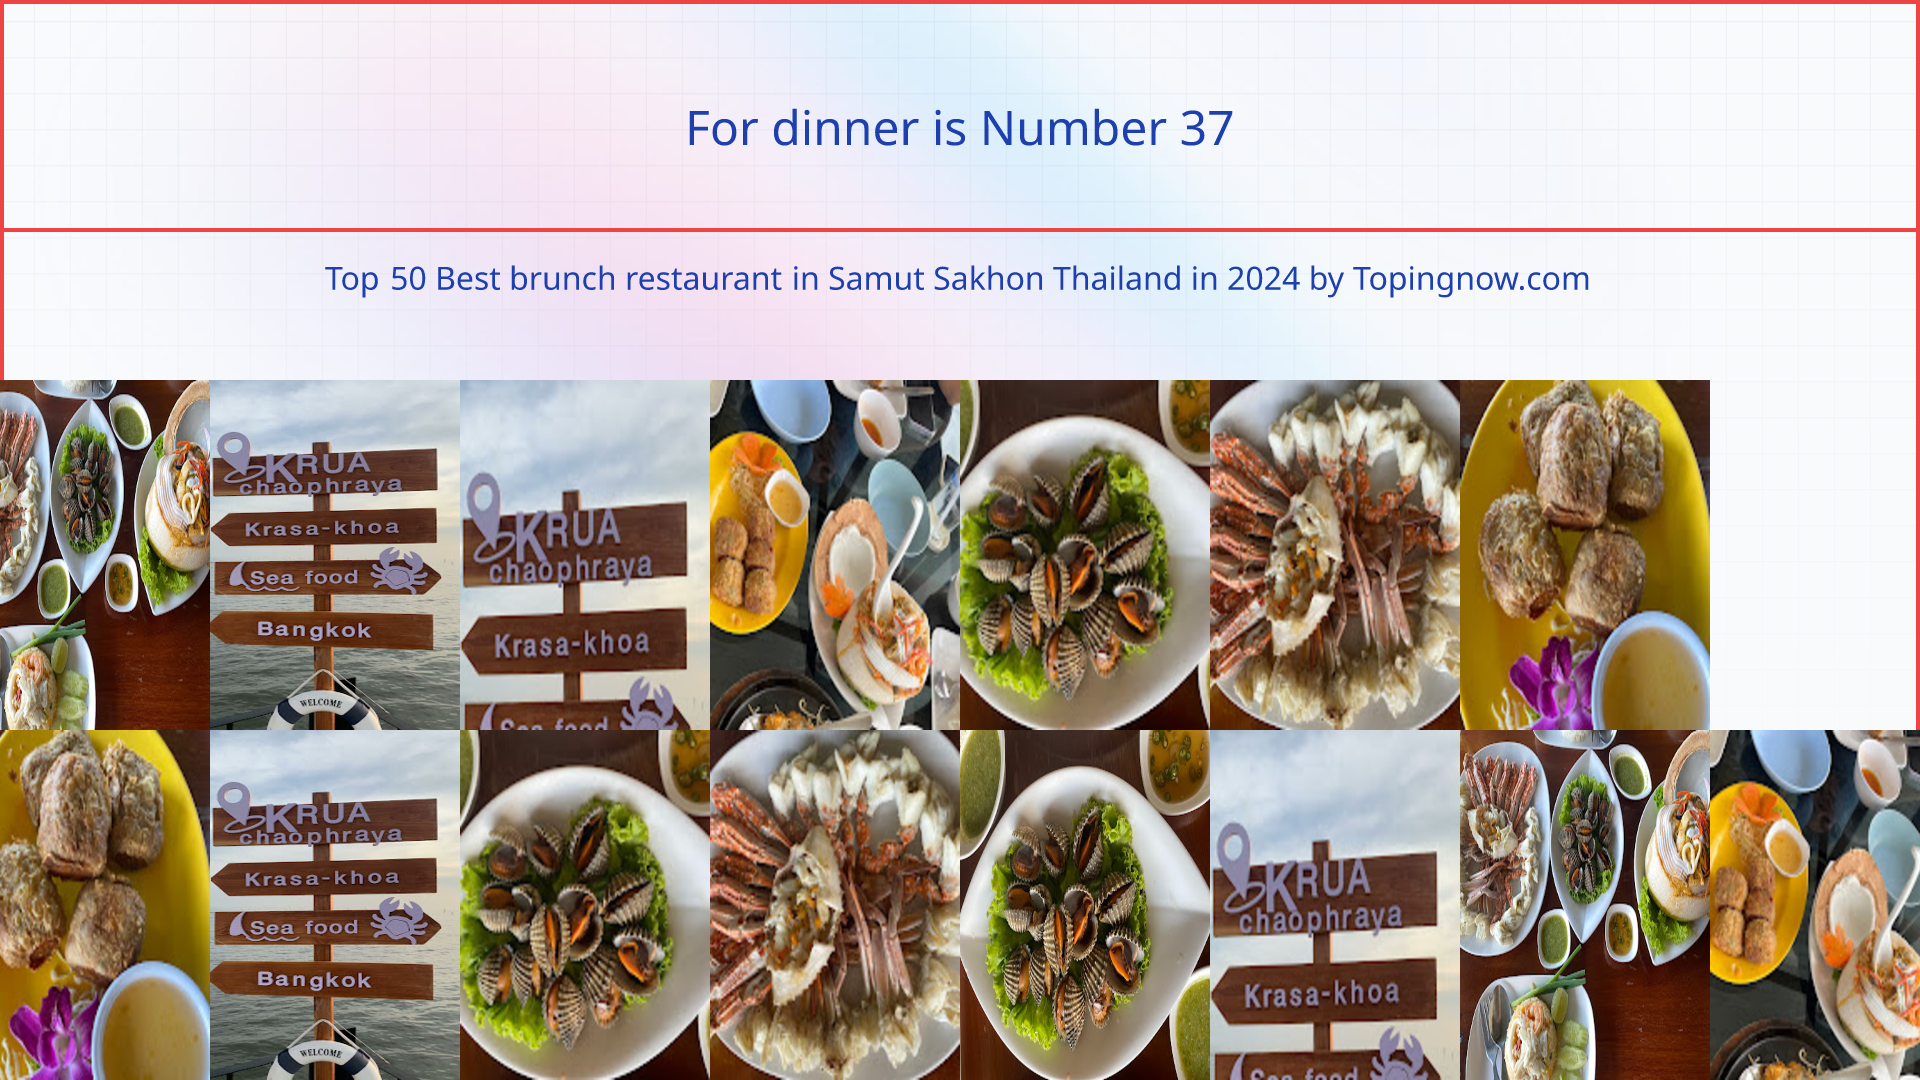 For dinner: Top 50 Best brunch restaurant in Samut Sakhon Thailand in 2024